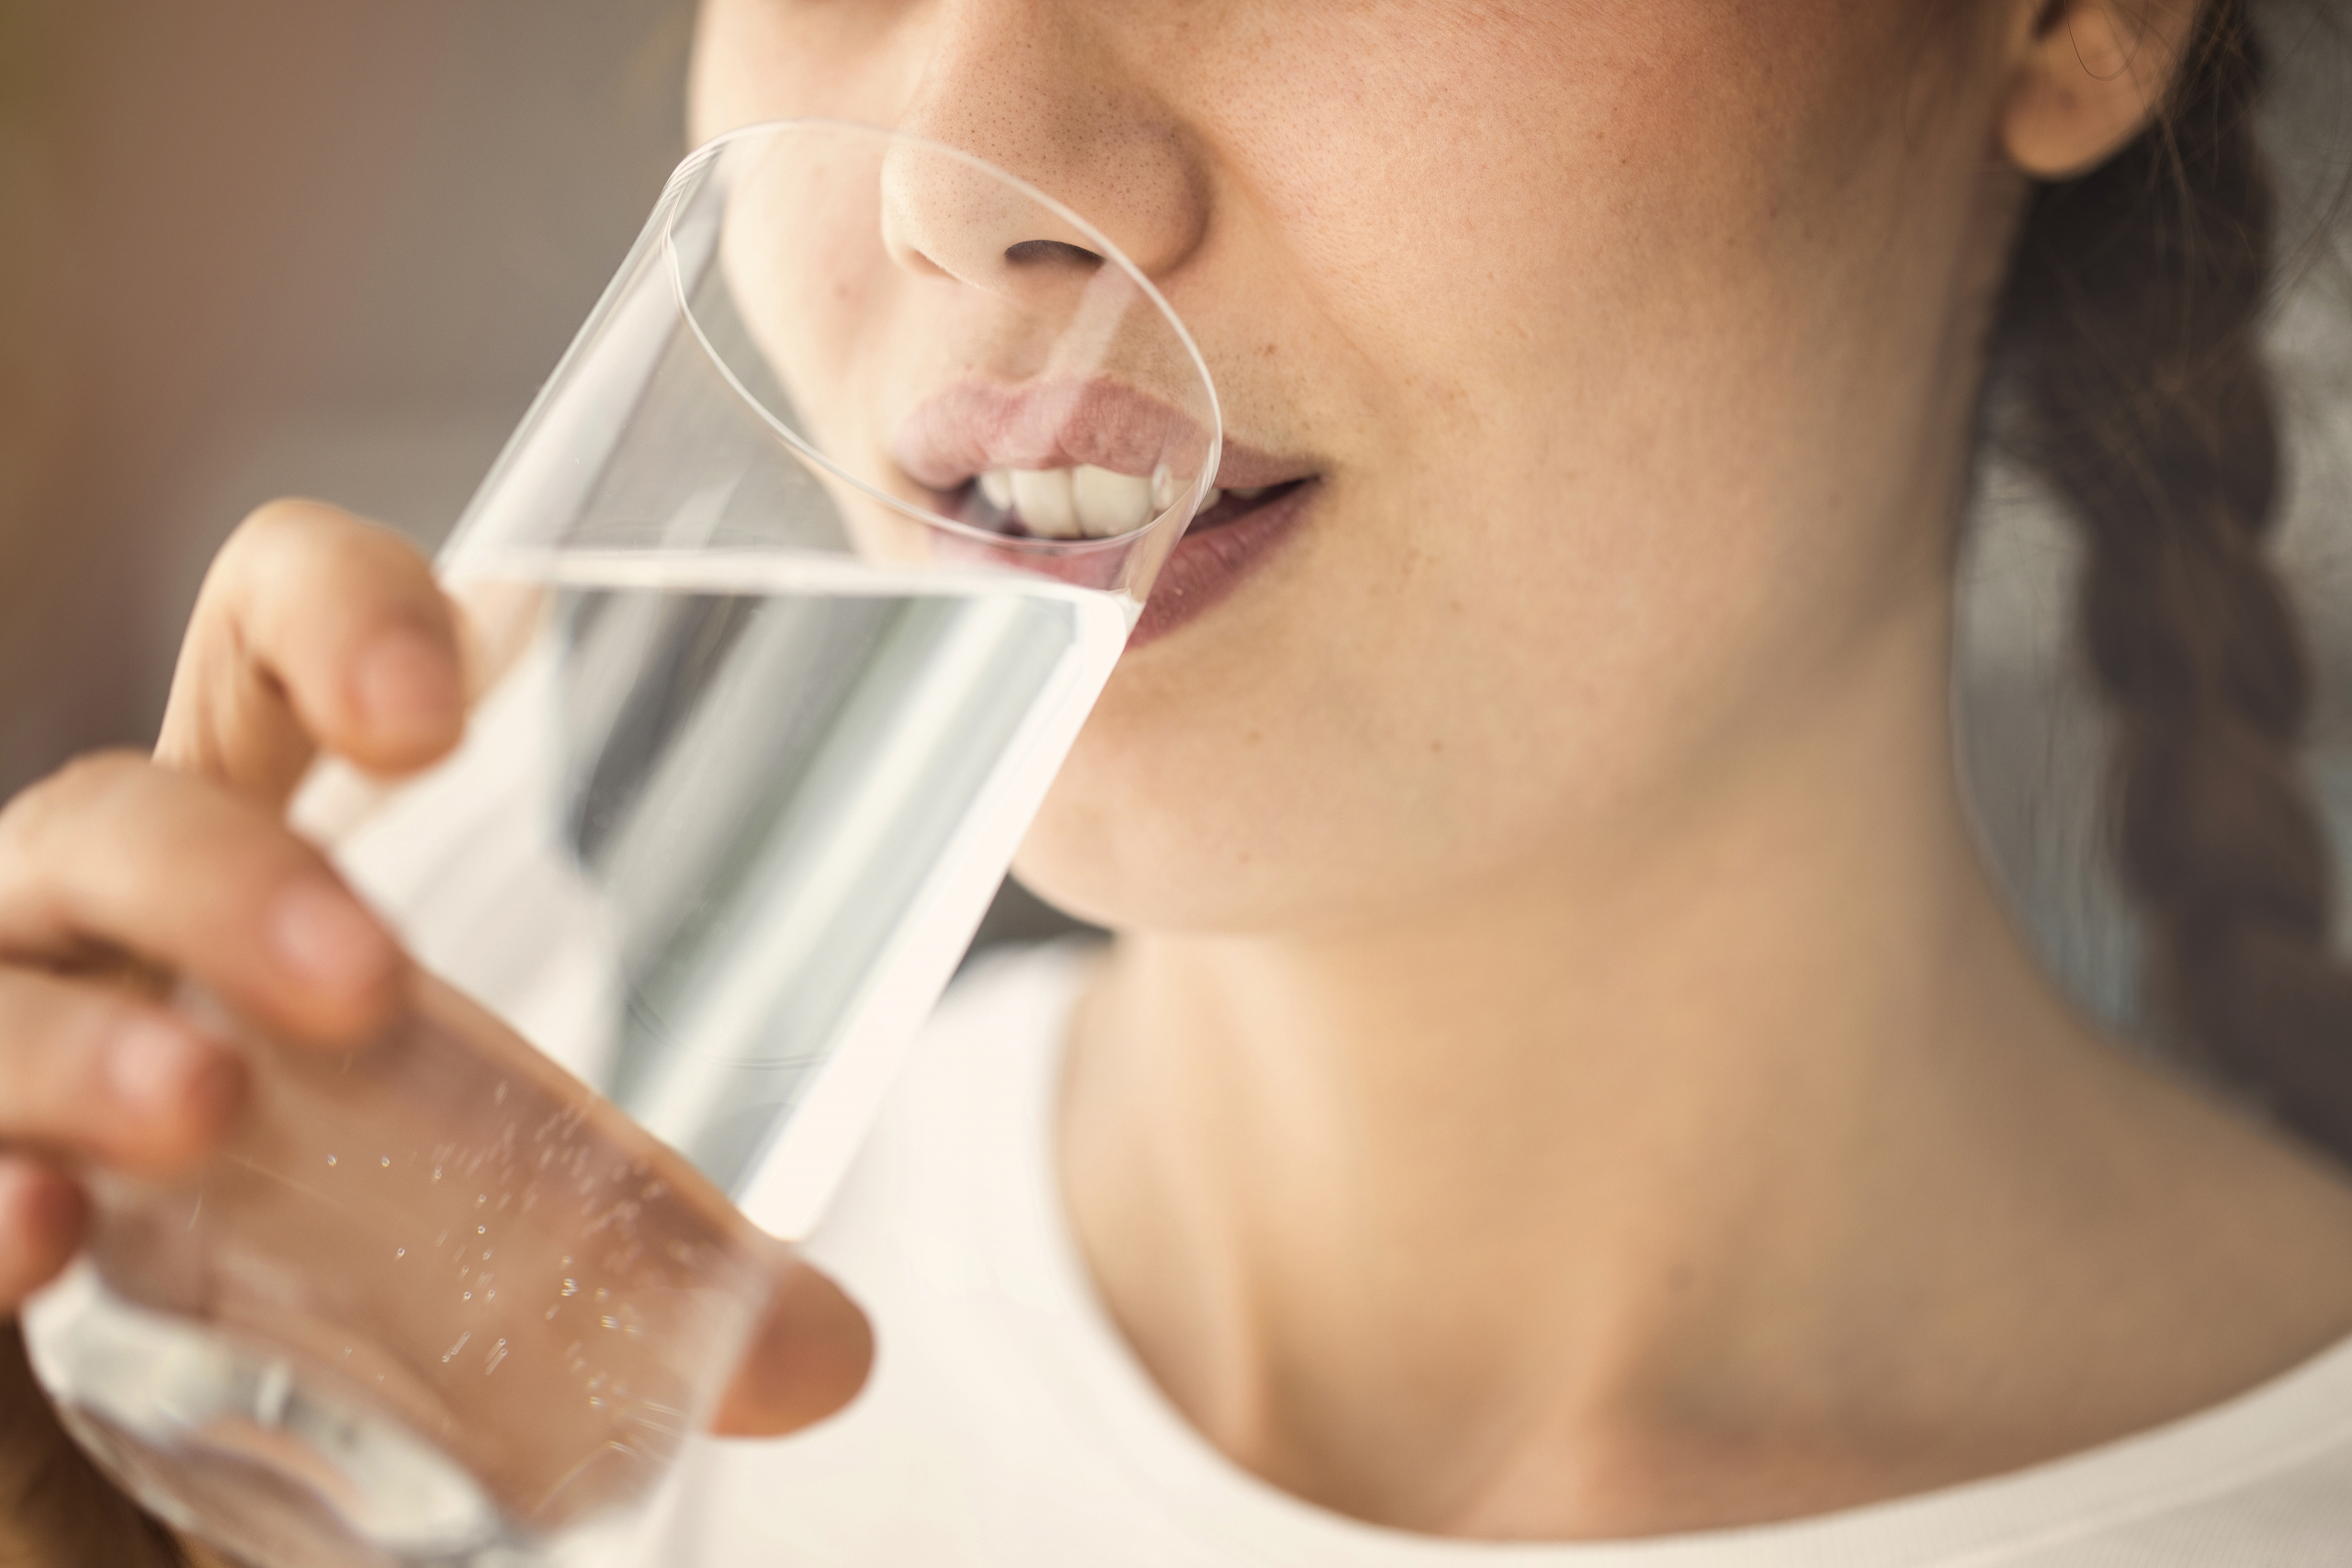 Areas of Application, Frau trinkt Wasser aus einem Glas